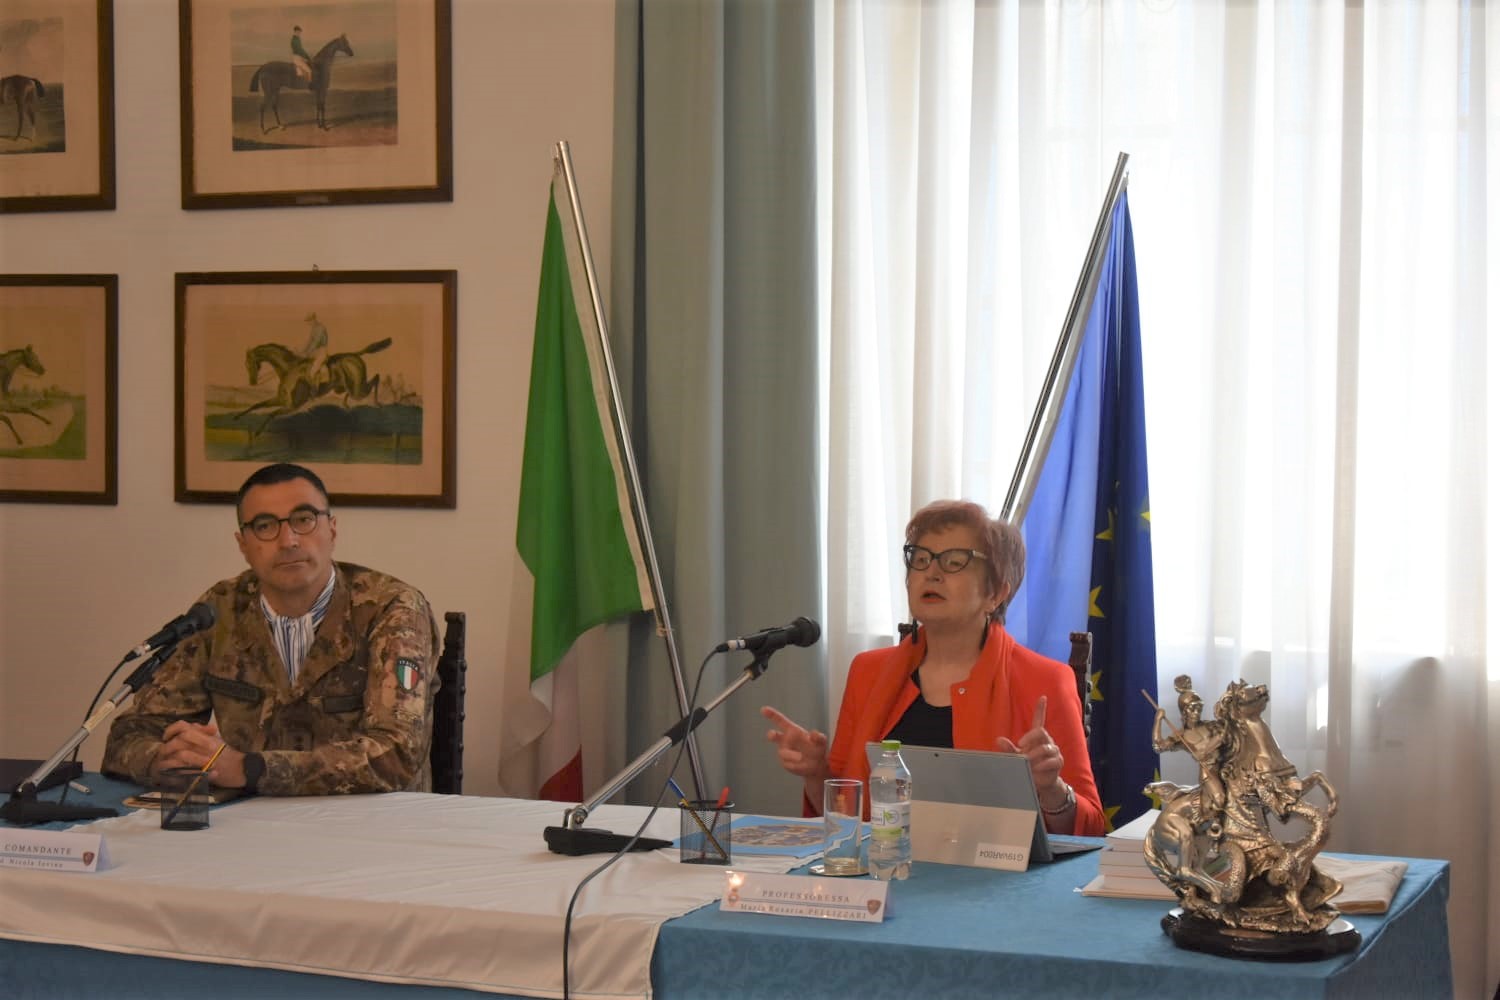 Salerno: caserma D’Avossa “Storia delle donne e studi di genere”, conclusione conferenze su prospettive di genere